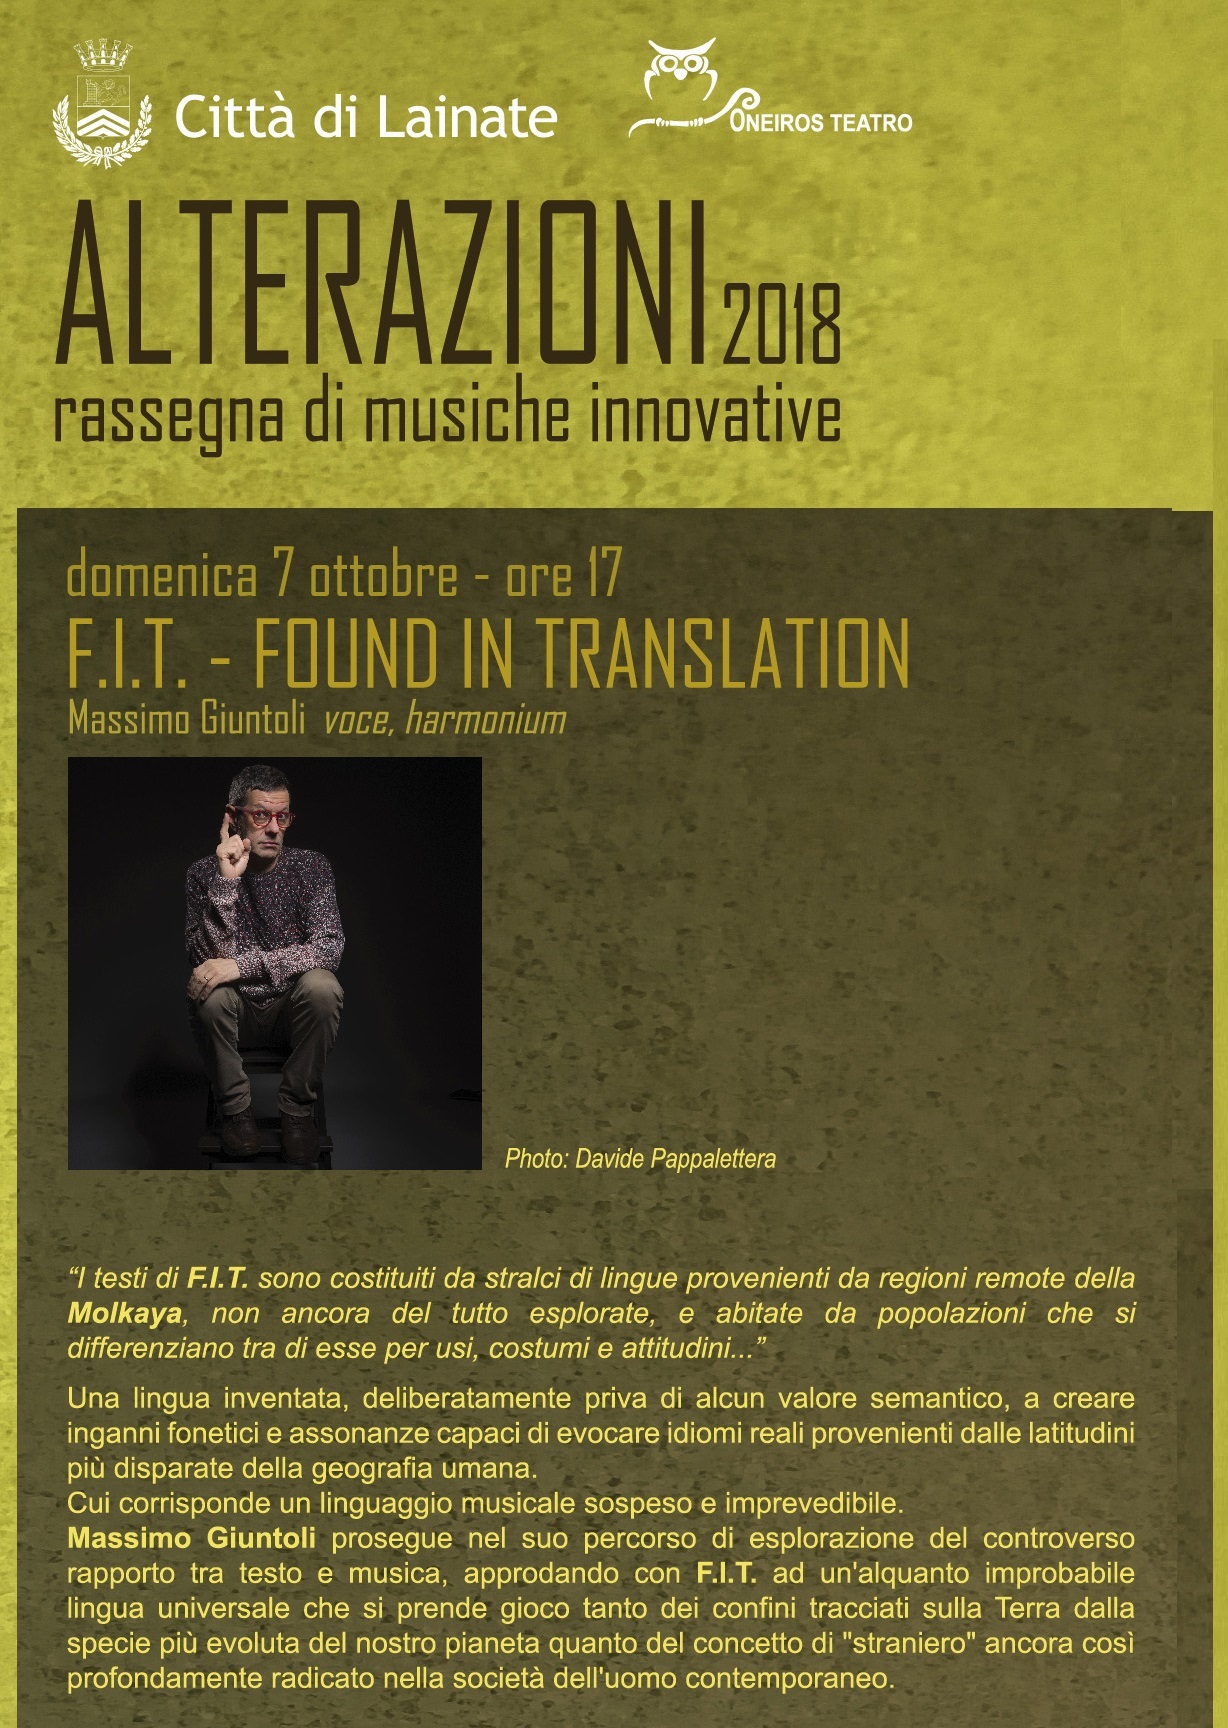 Alterazioni 2018: Found In Translation